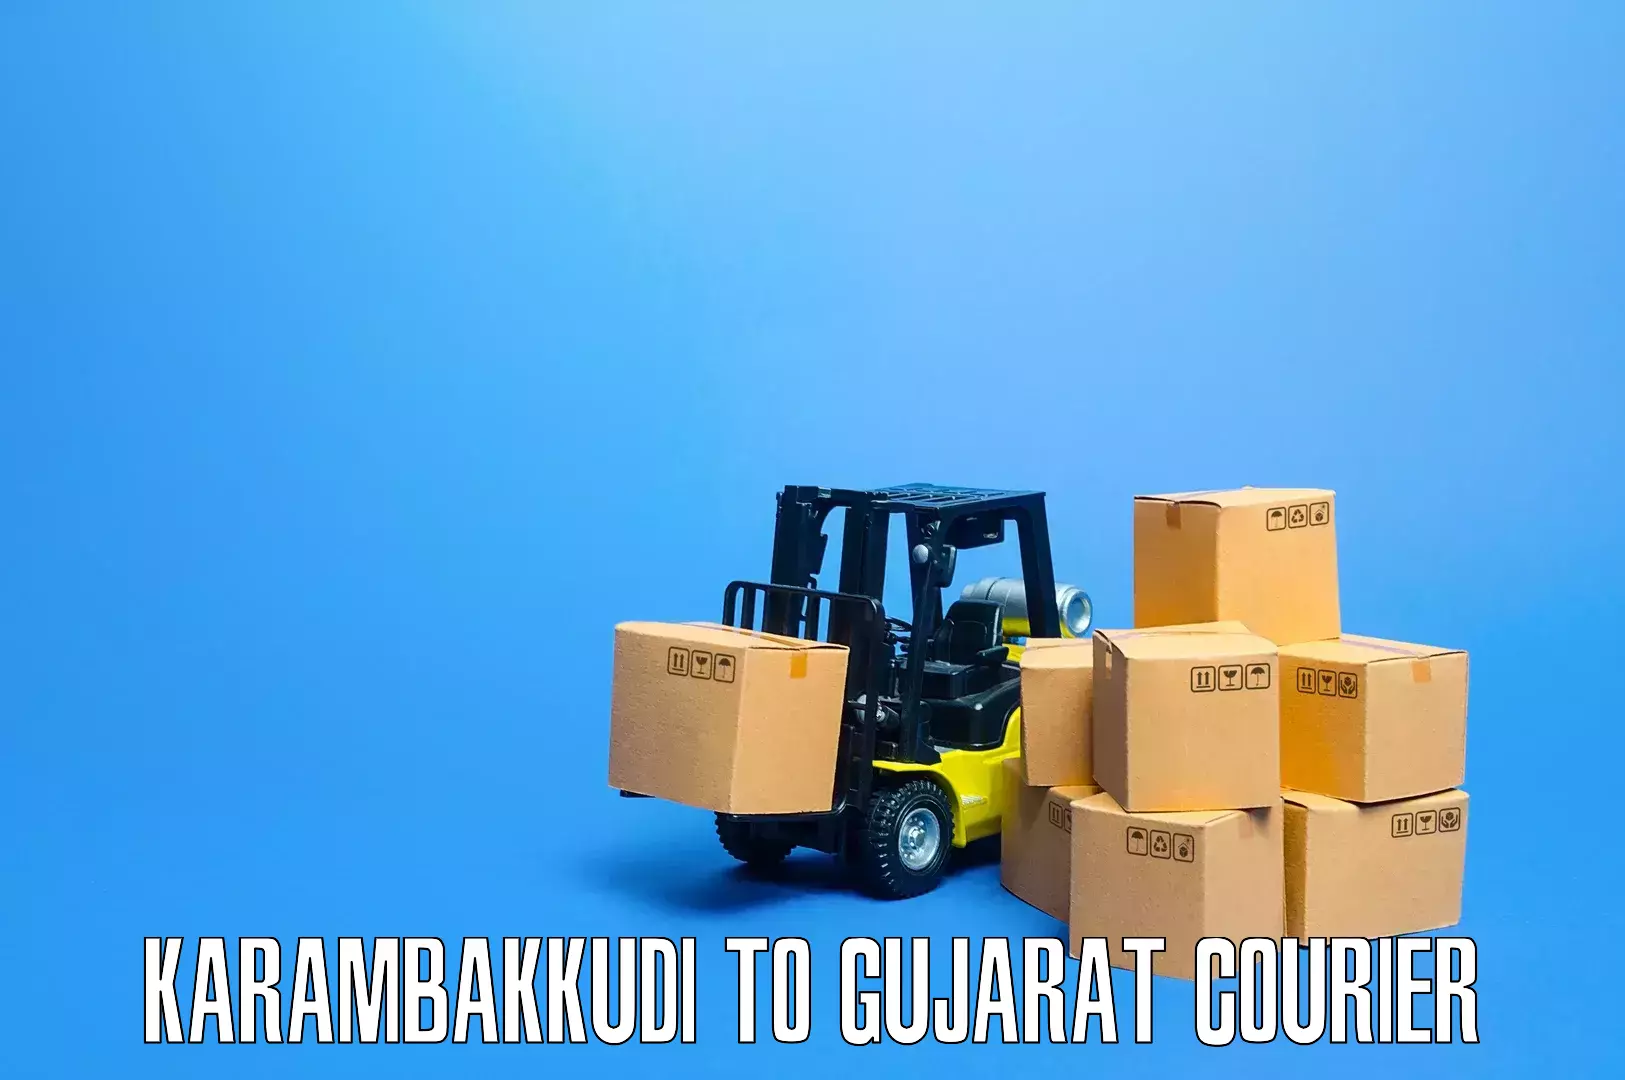 Furniture transport service in Karambakkudi to Dwarka